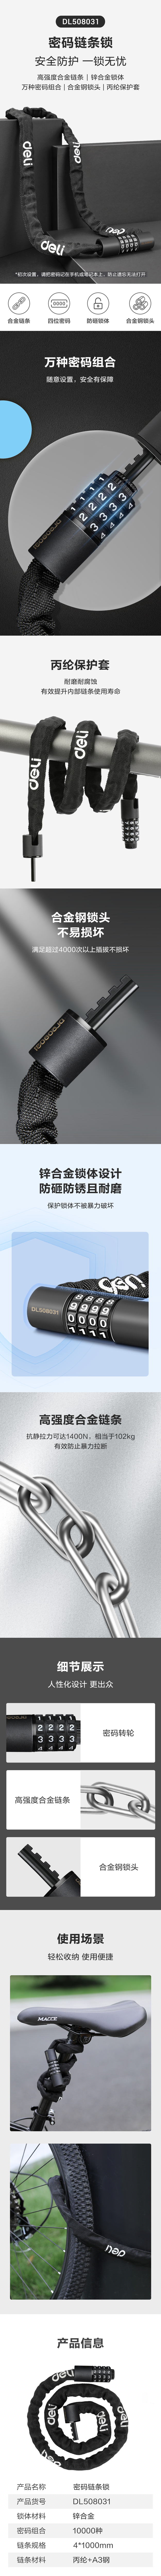 得力工具 DL508031 密码链条锁(黑)-4x1000mm